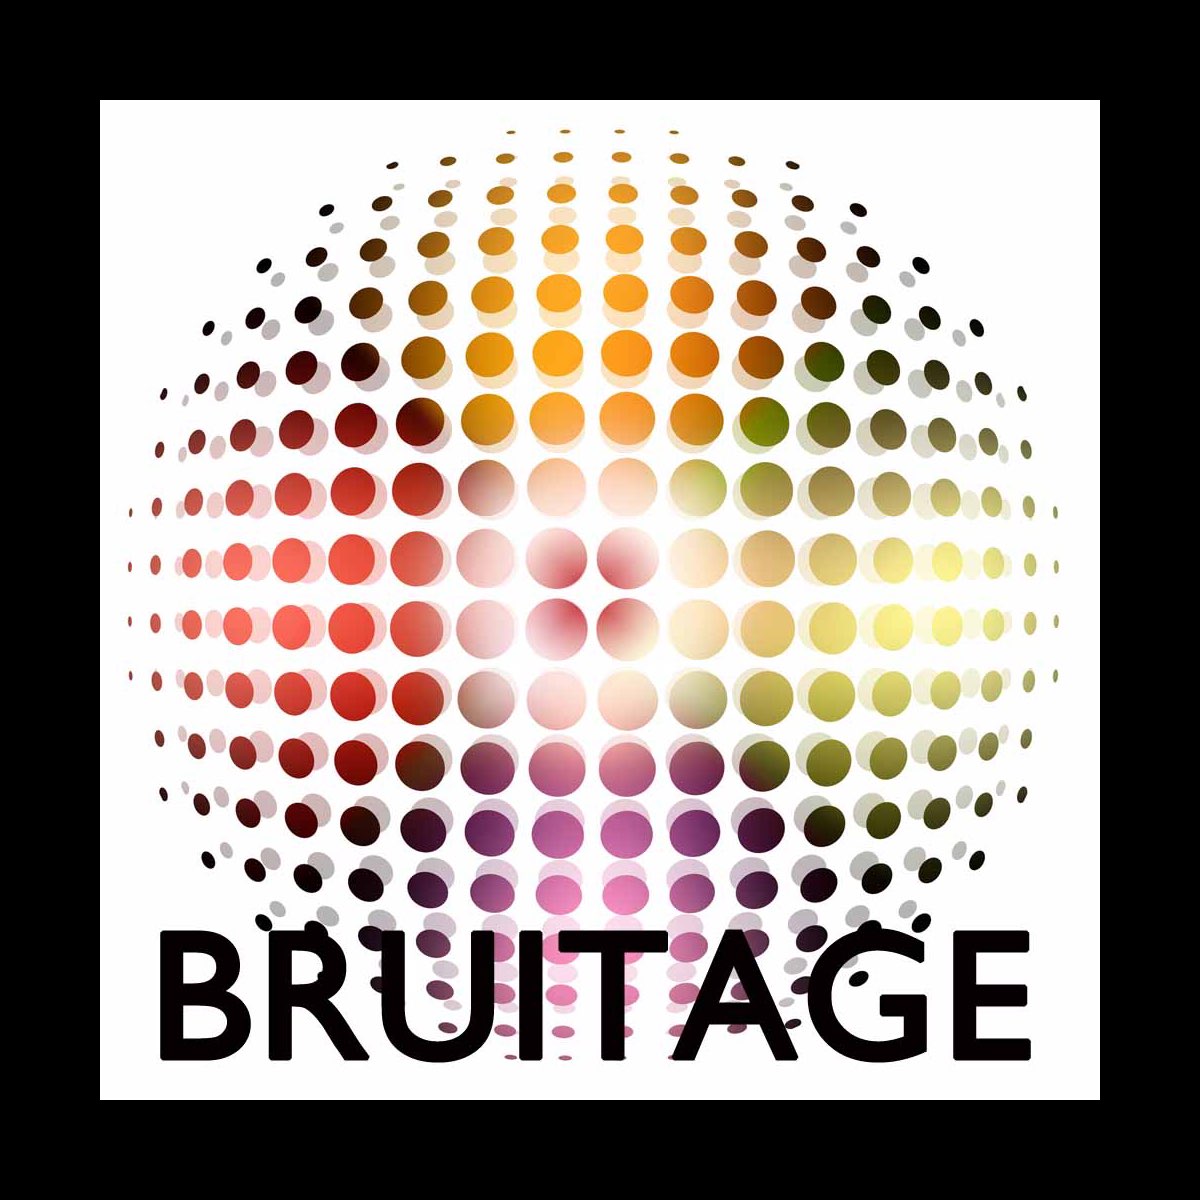 Bruitage Sons Et Bruits Bruitage Pour Video Sonnerie Pour Portable Effets Speciaux Par Bruitage Club Sur Apple Music